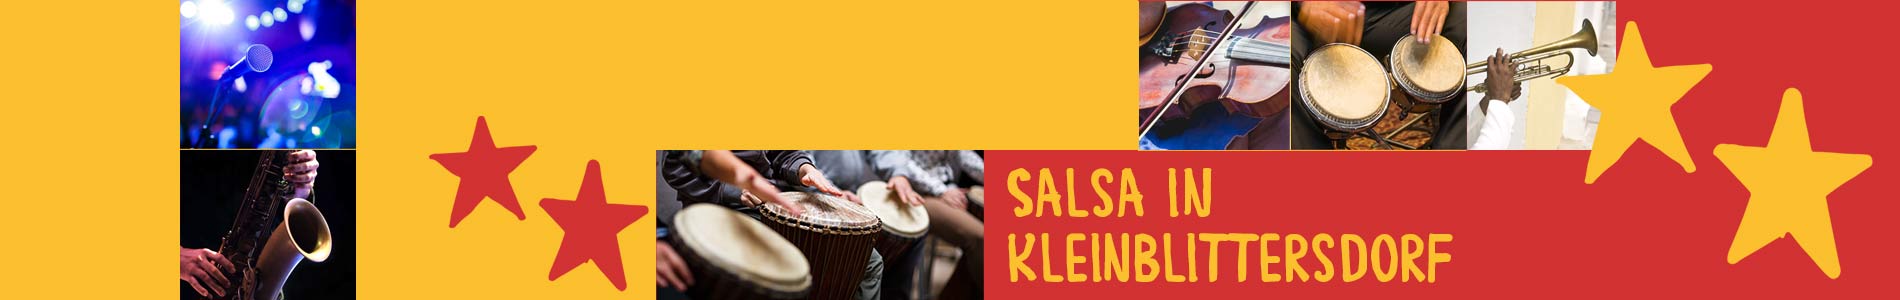 Salsa in Kleinblittersdorf – Salsa lernen und tanzen, Tanzkurse, Partys, Veranstaltungen